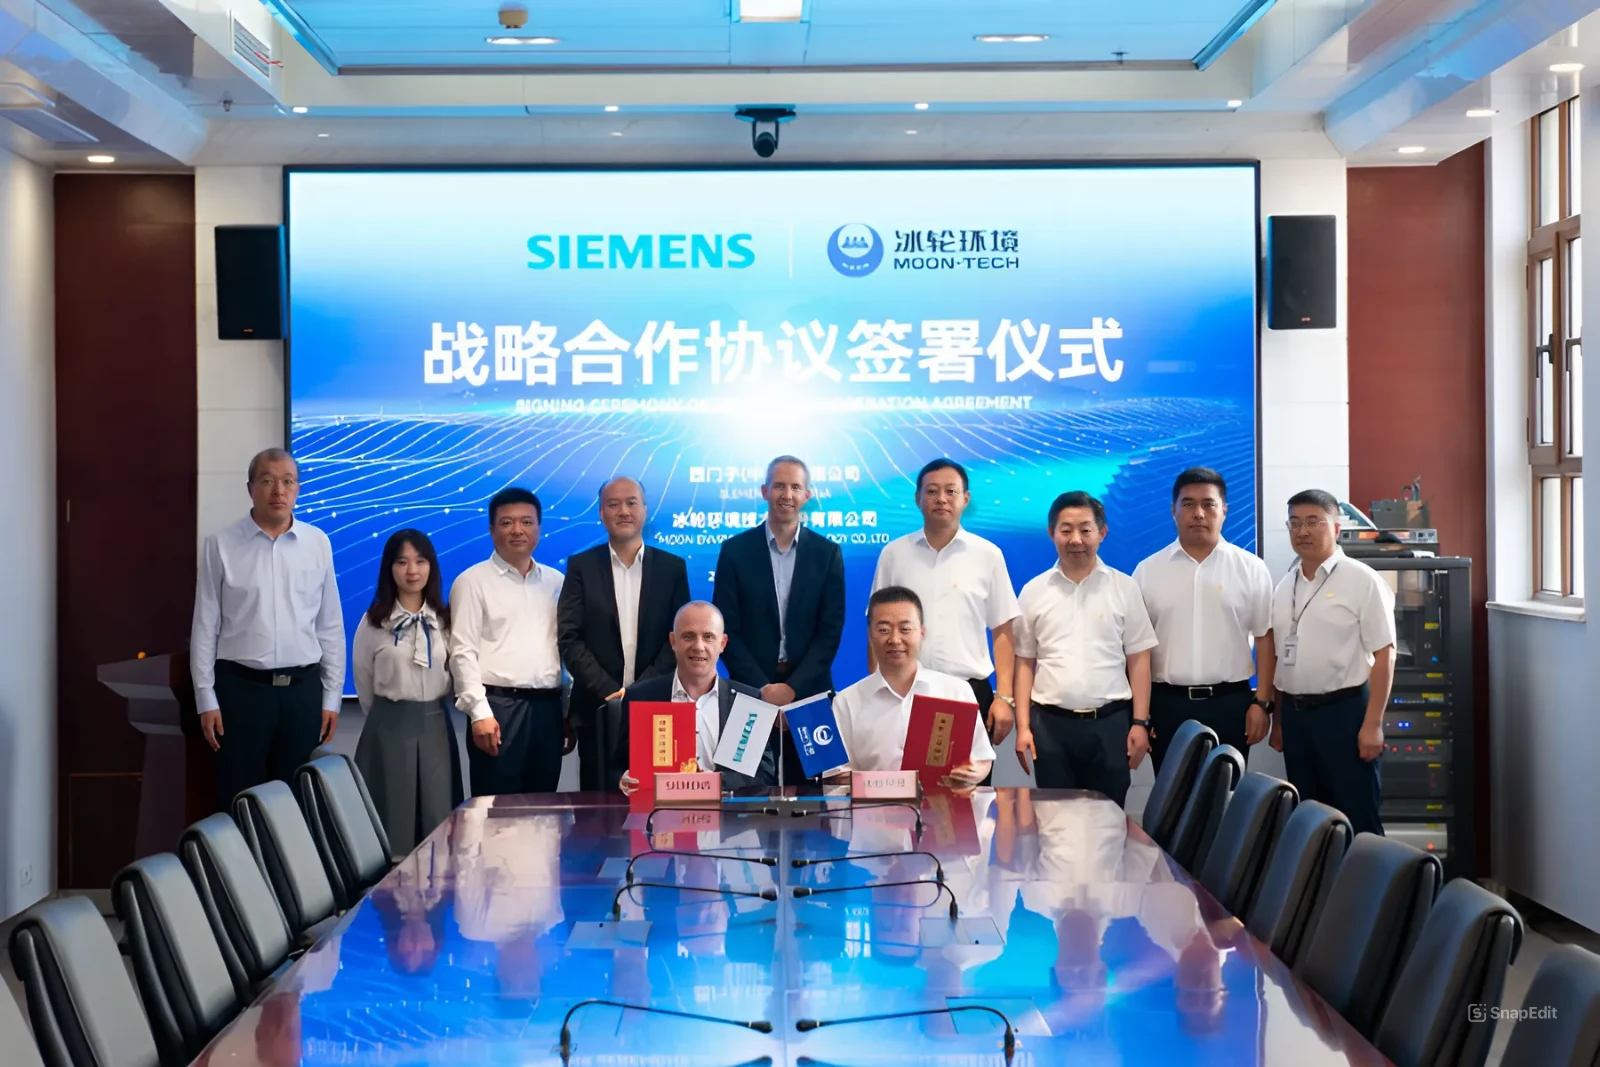 MOON-TECH и Siemens (Китай) подписали соглашение о стратегическом партнерстве